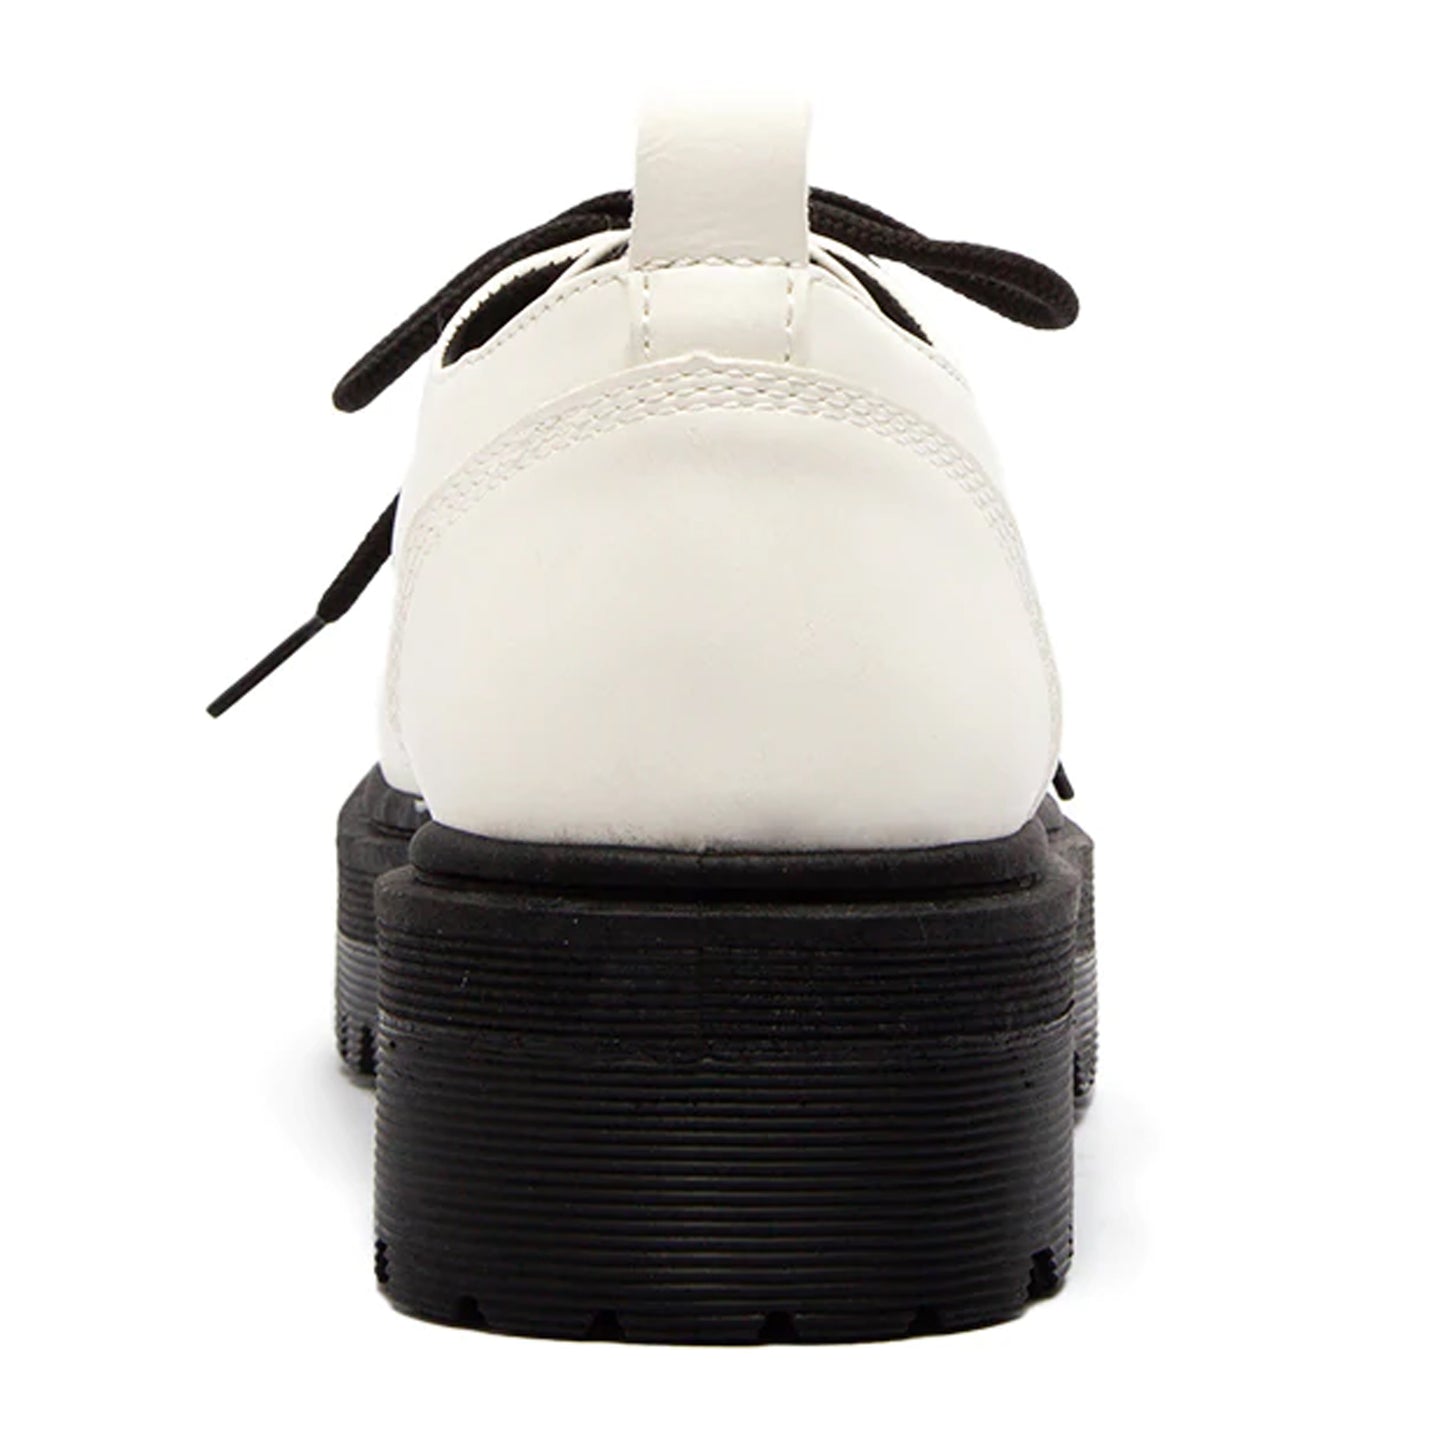 SOBEYO Women's Platform Oxford Lace-up 4 Eyelets Shoes White Nappa